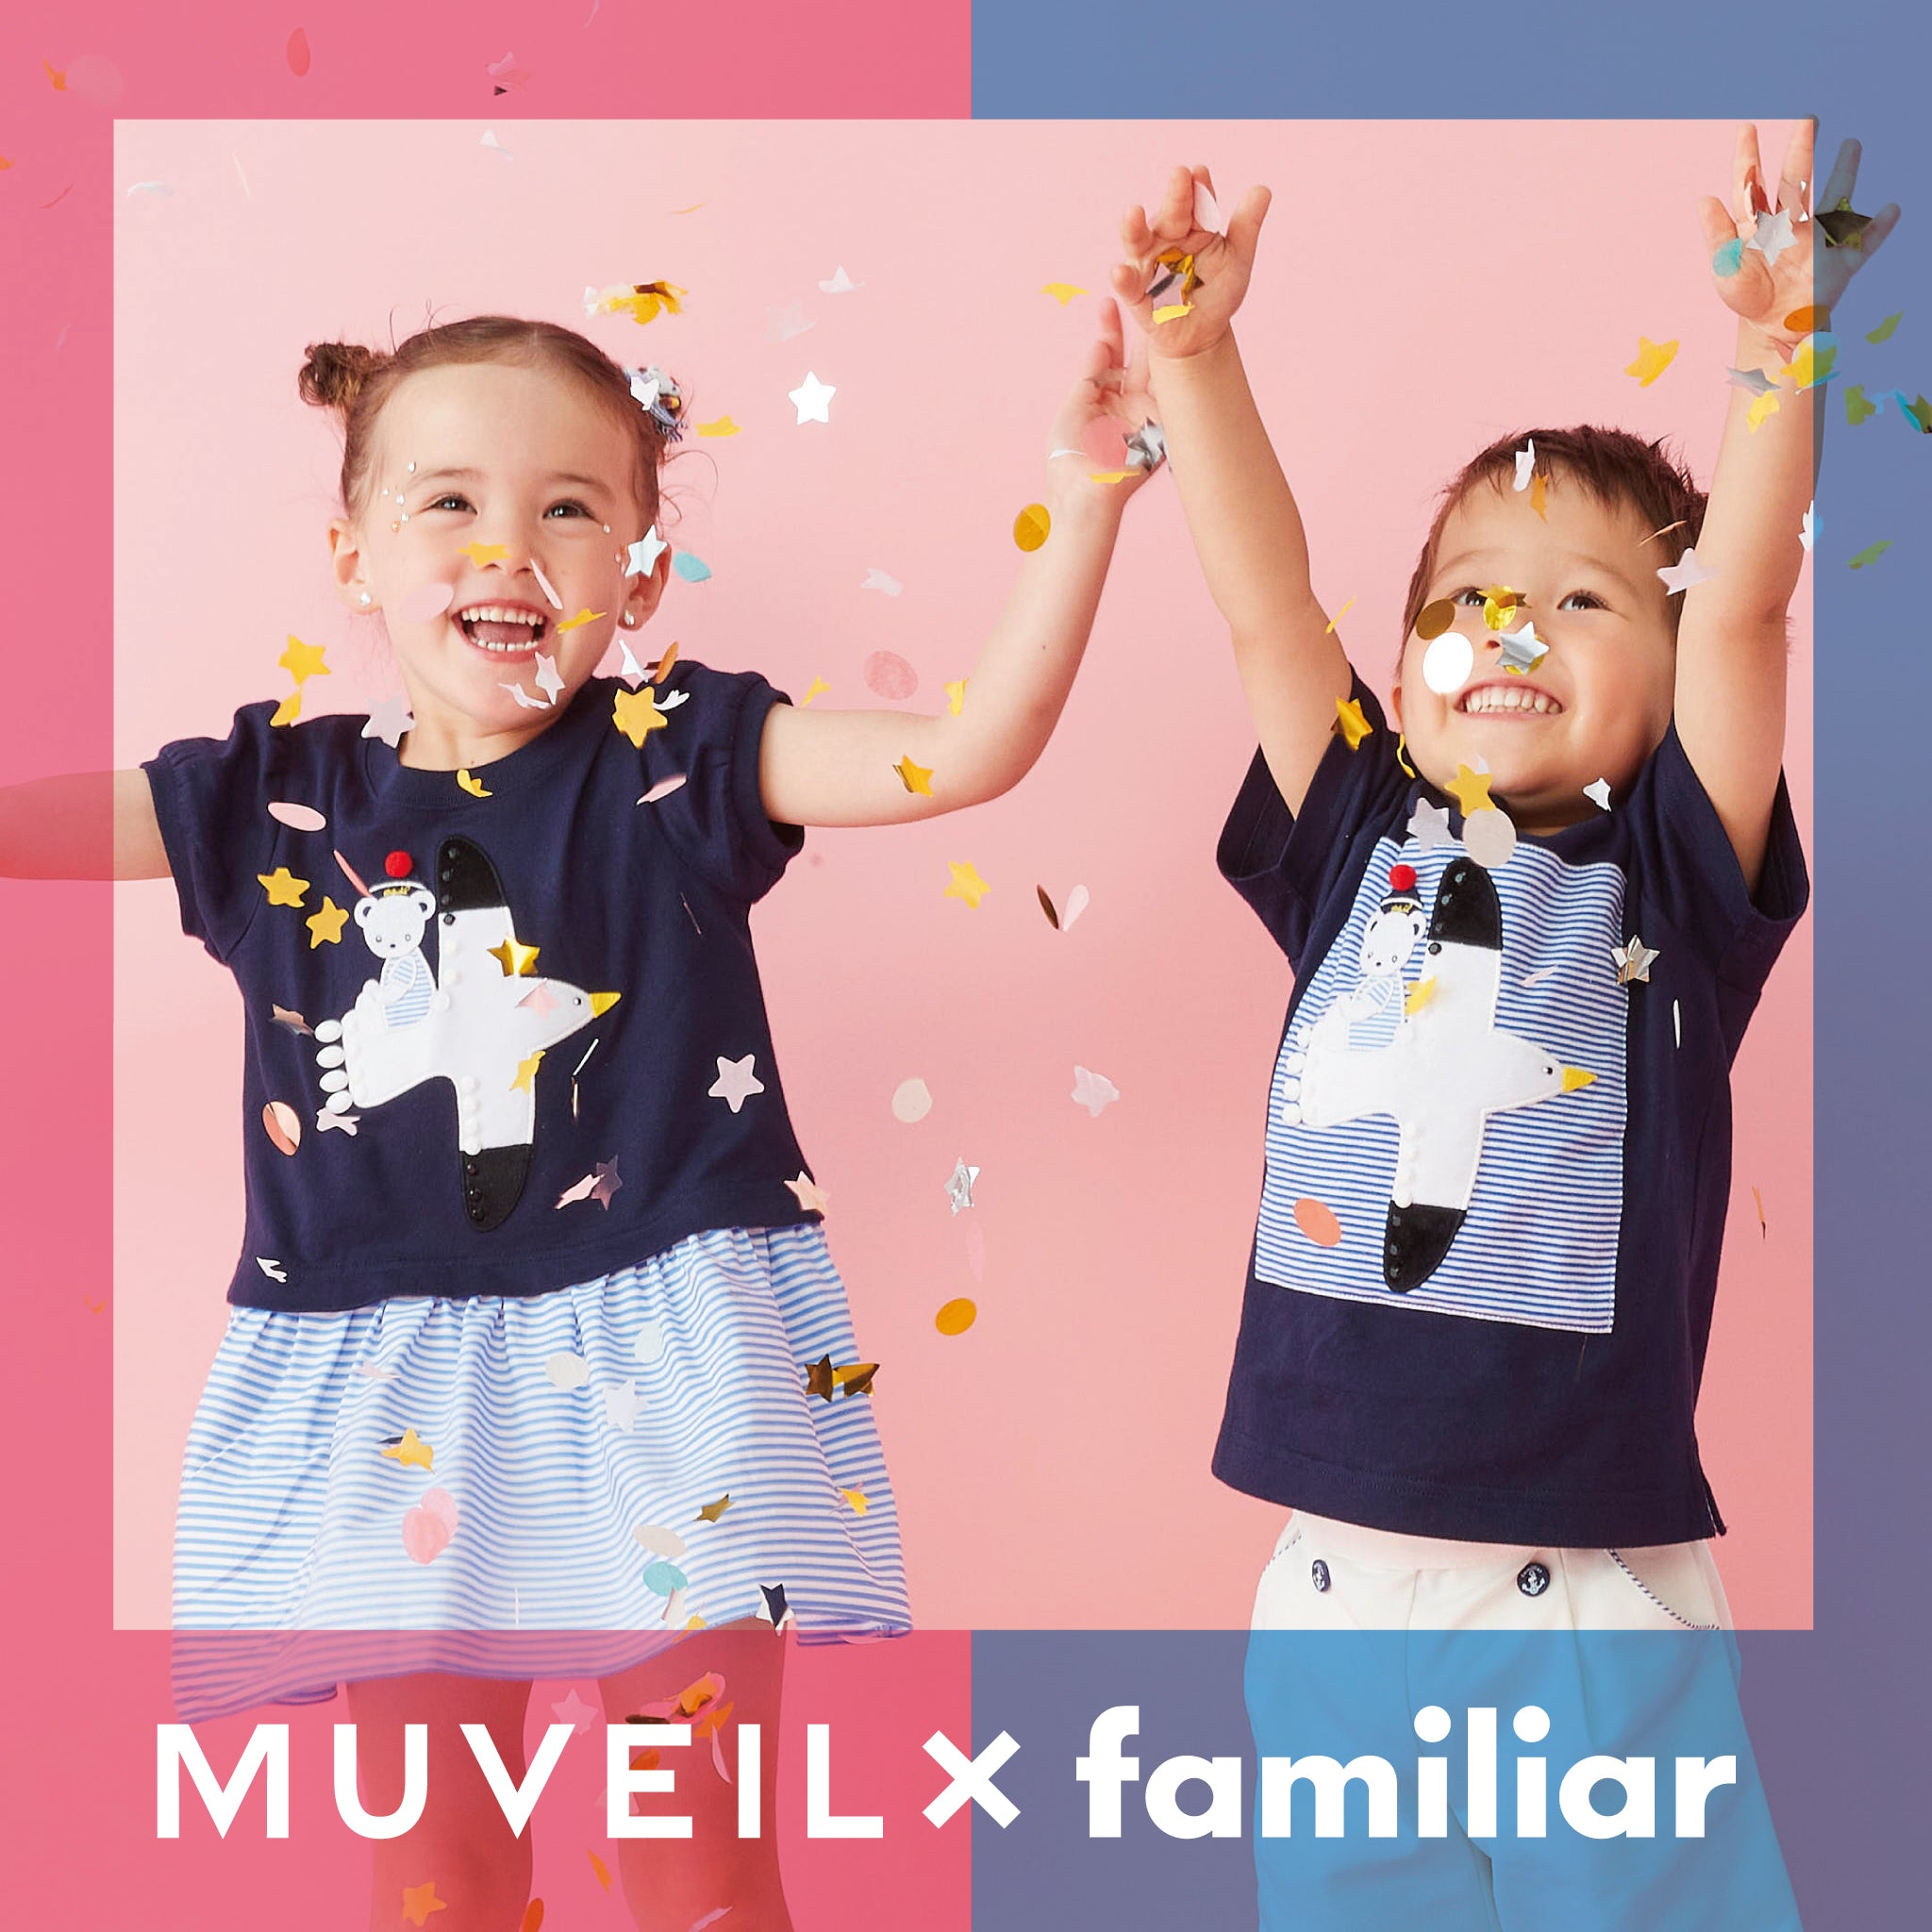 MUVEIL×familiar 親子で楽しめる夏のマリンモチーフアイテムが新登場